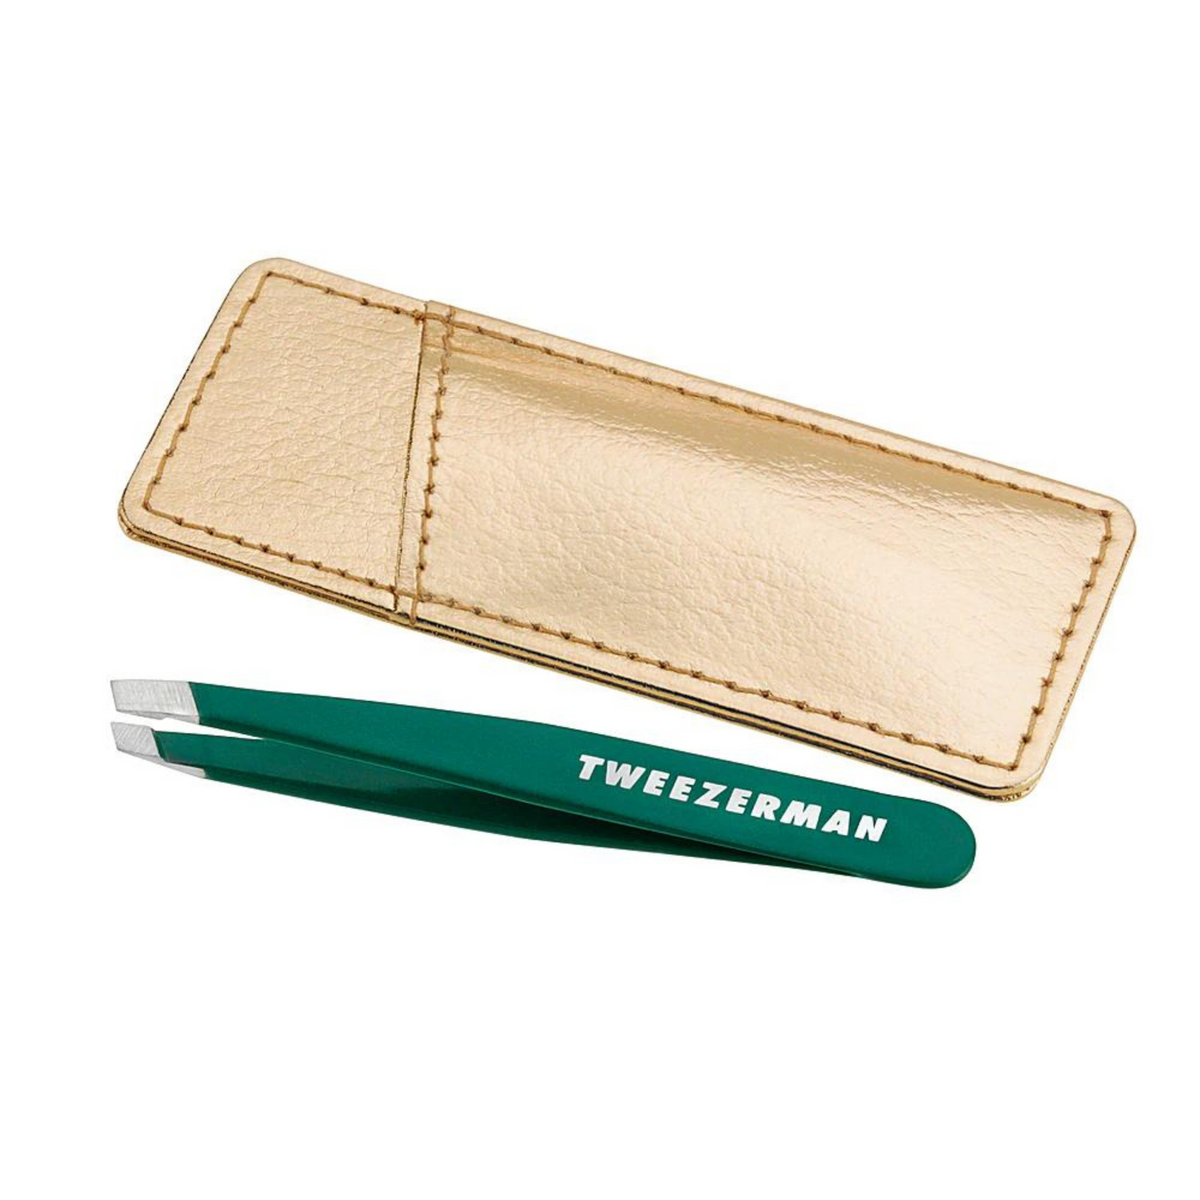 Primary Image of Tweezerman Emerald Shimmer Mini Slant Tweezer & Case